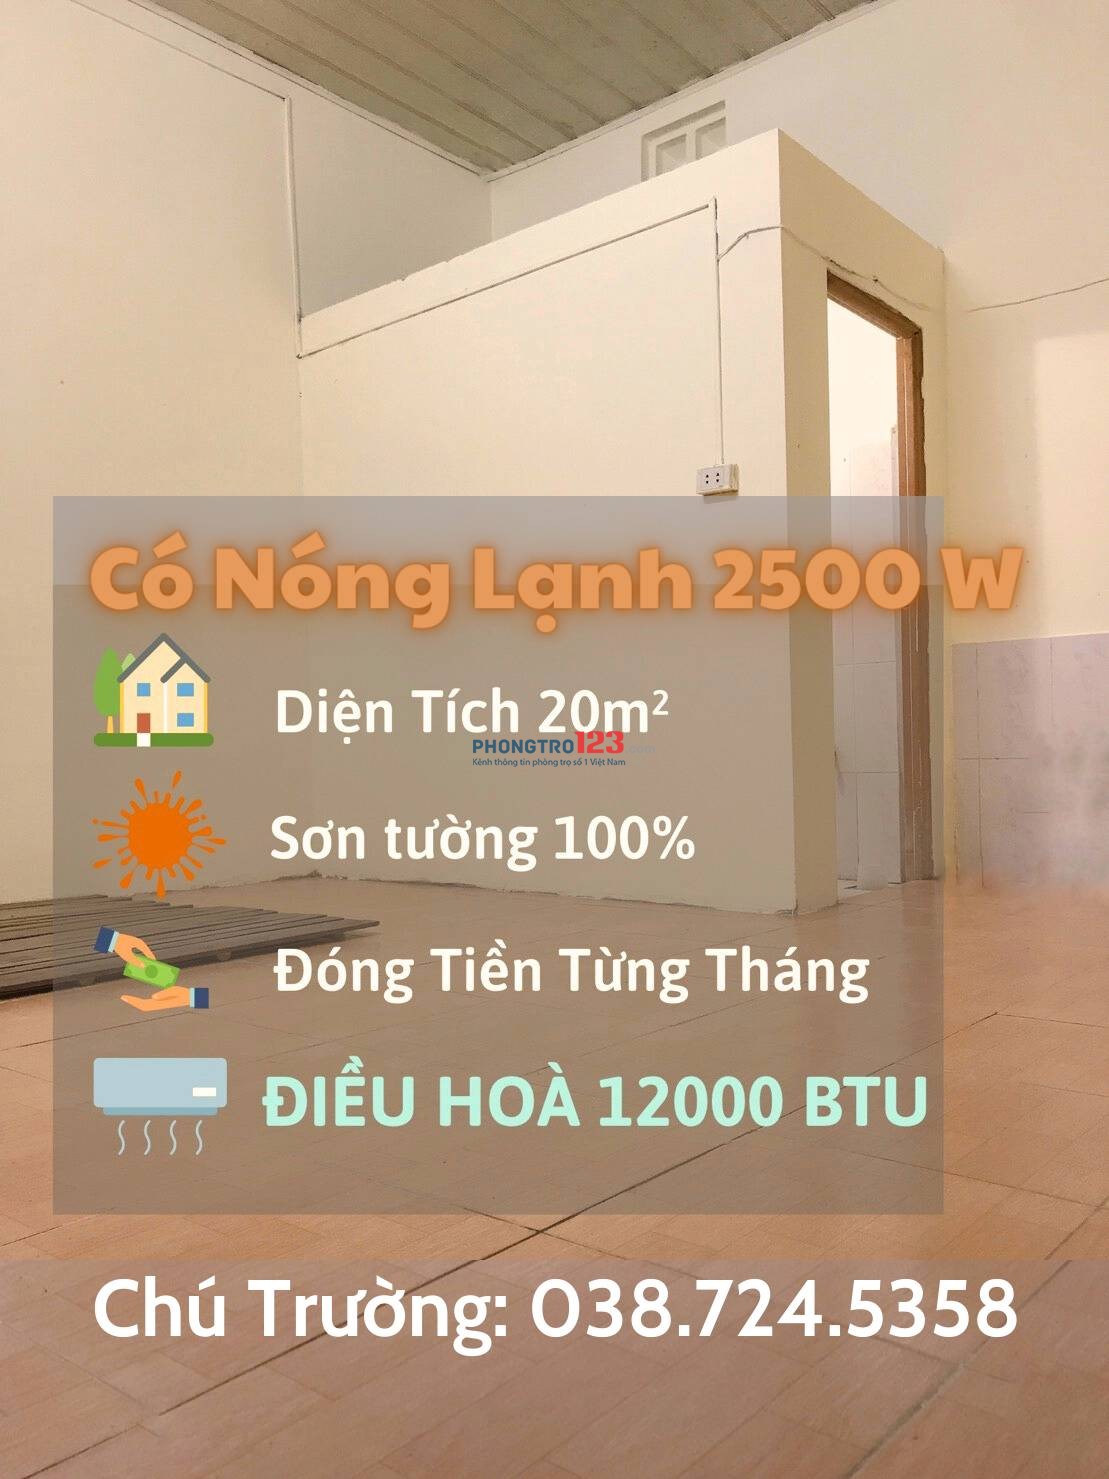 Cho thuê phòng trọ ngõ 293 Ngọc Thụy, DT 20m2, giá rẻ chỉ 2 triệu/tháng